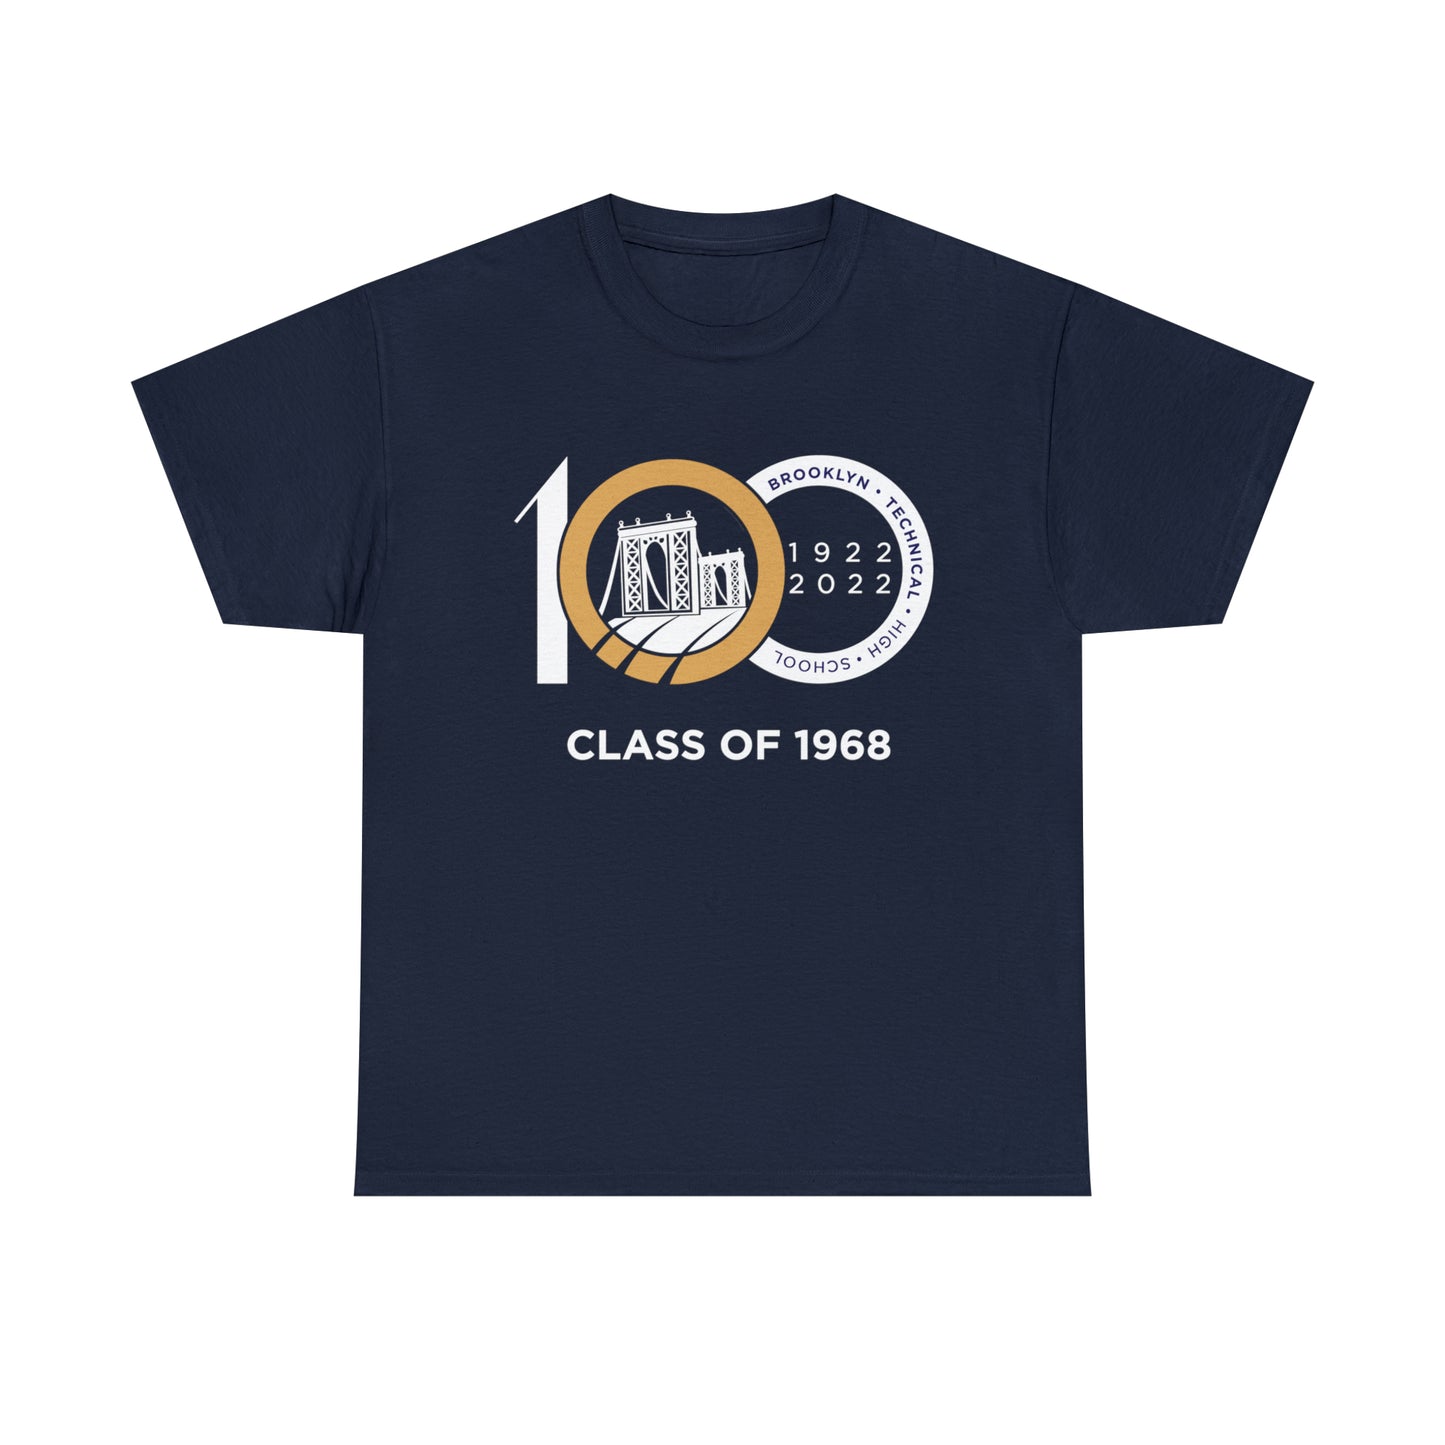 Centennial - Men's Heavy Cotton T-Shirt - Class Of 1968